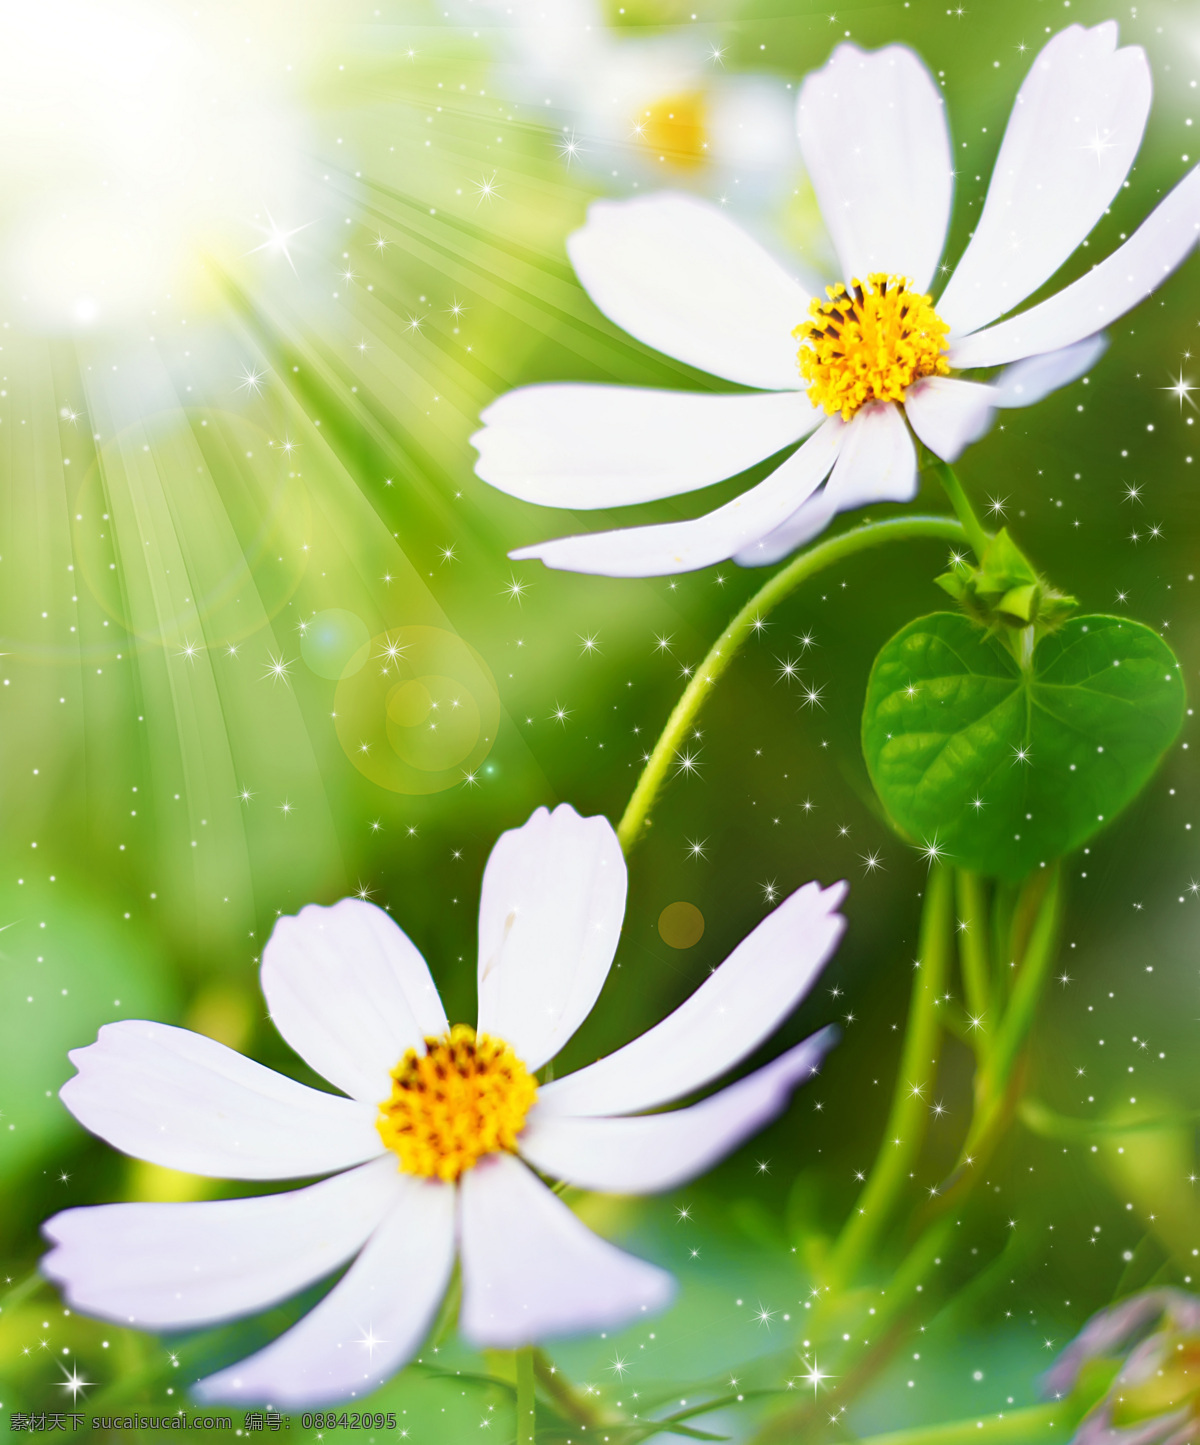 白色 雏 菊花 背景 自然 风景 花卉 花朵 美丽 清新 免费素材下载 背景墙 背景图 装饰画 阳光 晨光